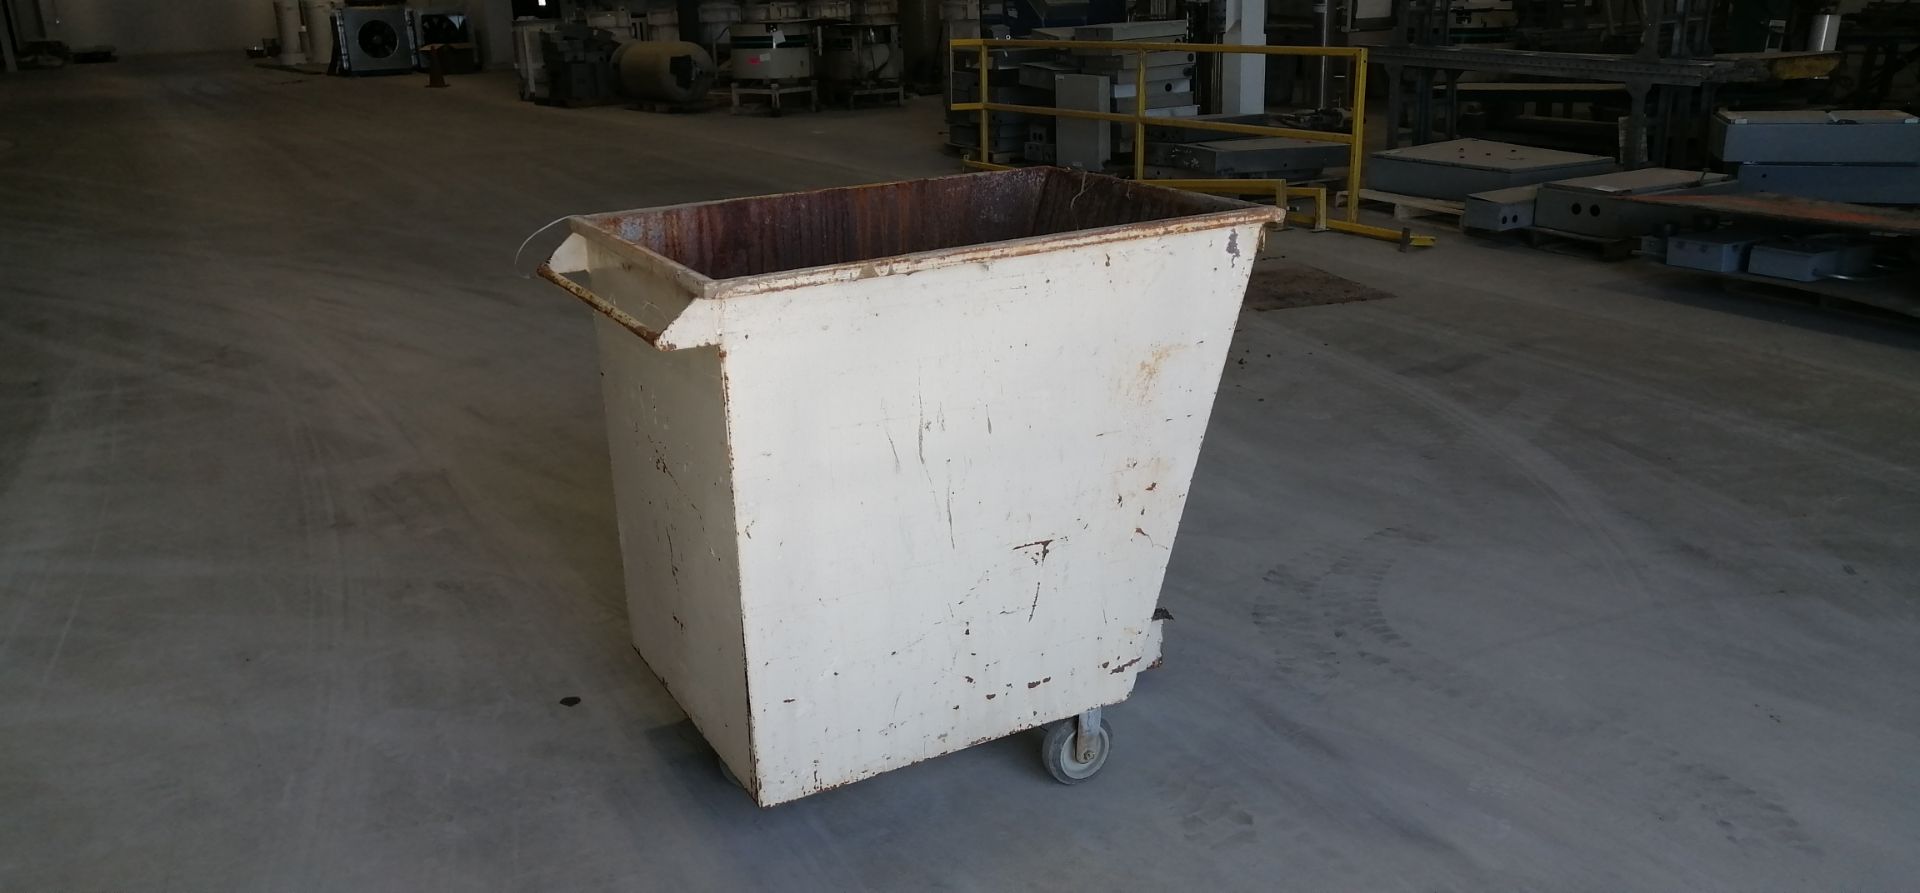 15 steel bin on wheel - Image 2 of 12